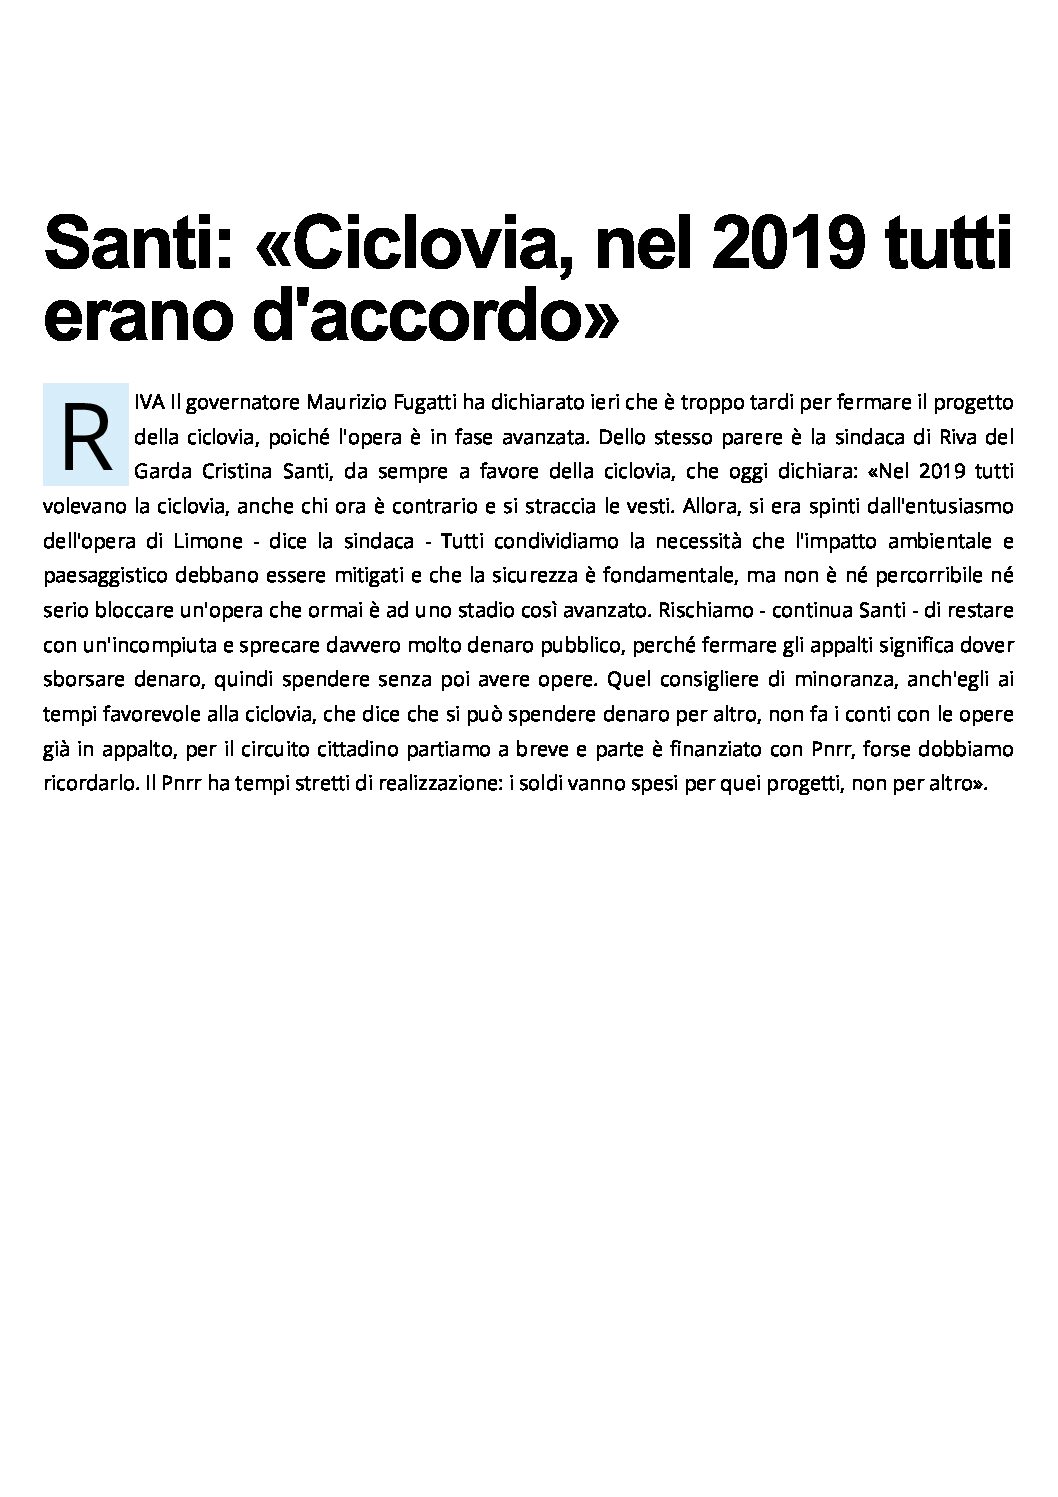 Ciclovia del Garda: Riva, la sindaca Santi “nel 2019 tutti erano d’accordo”